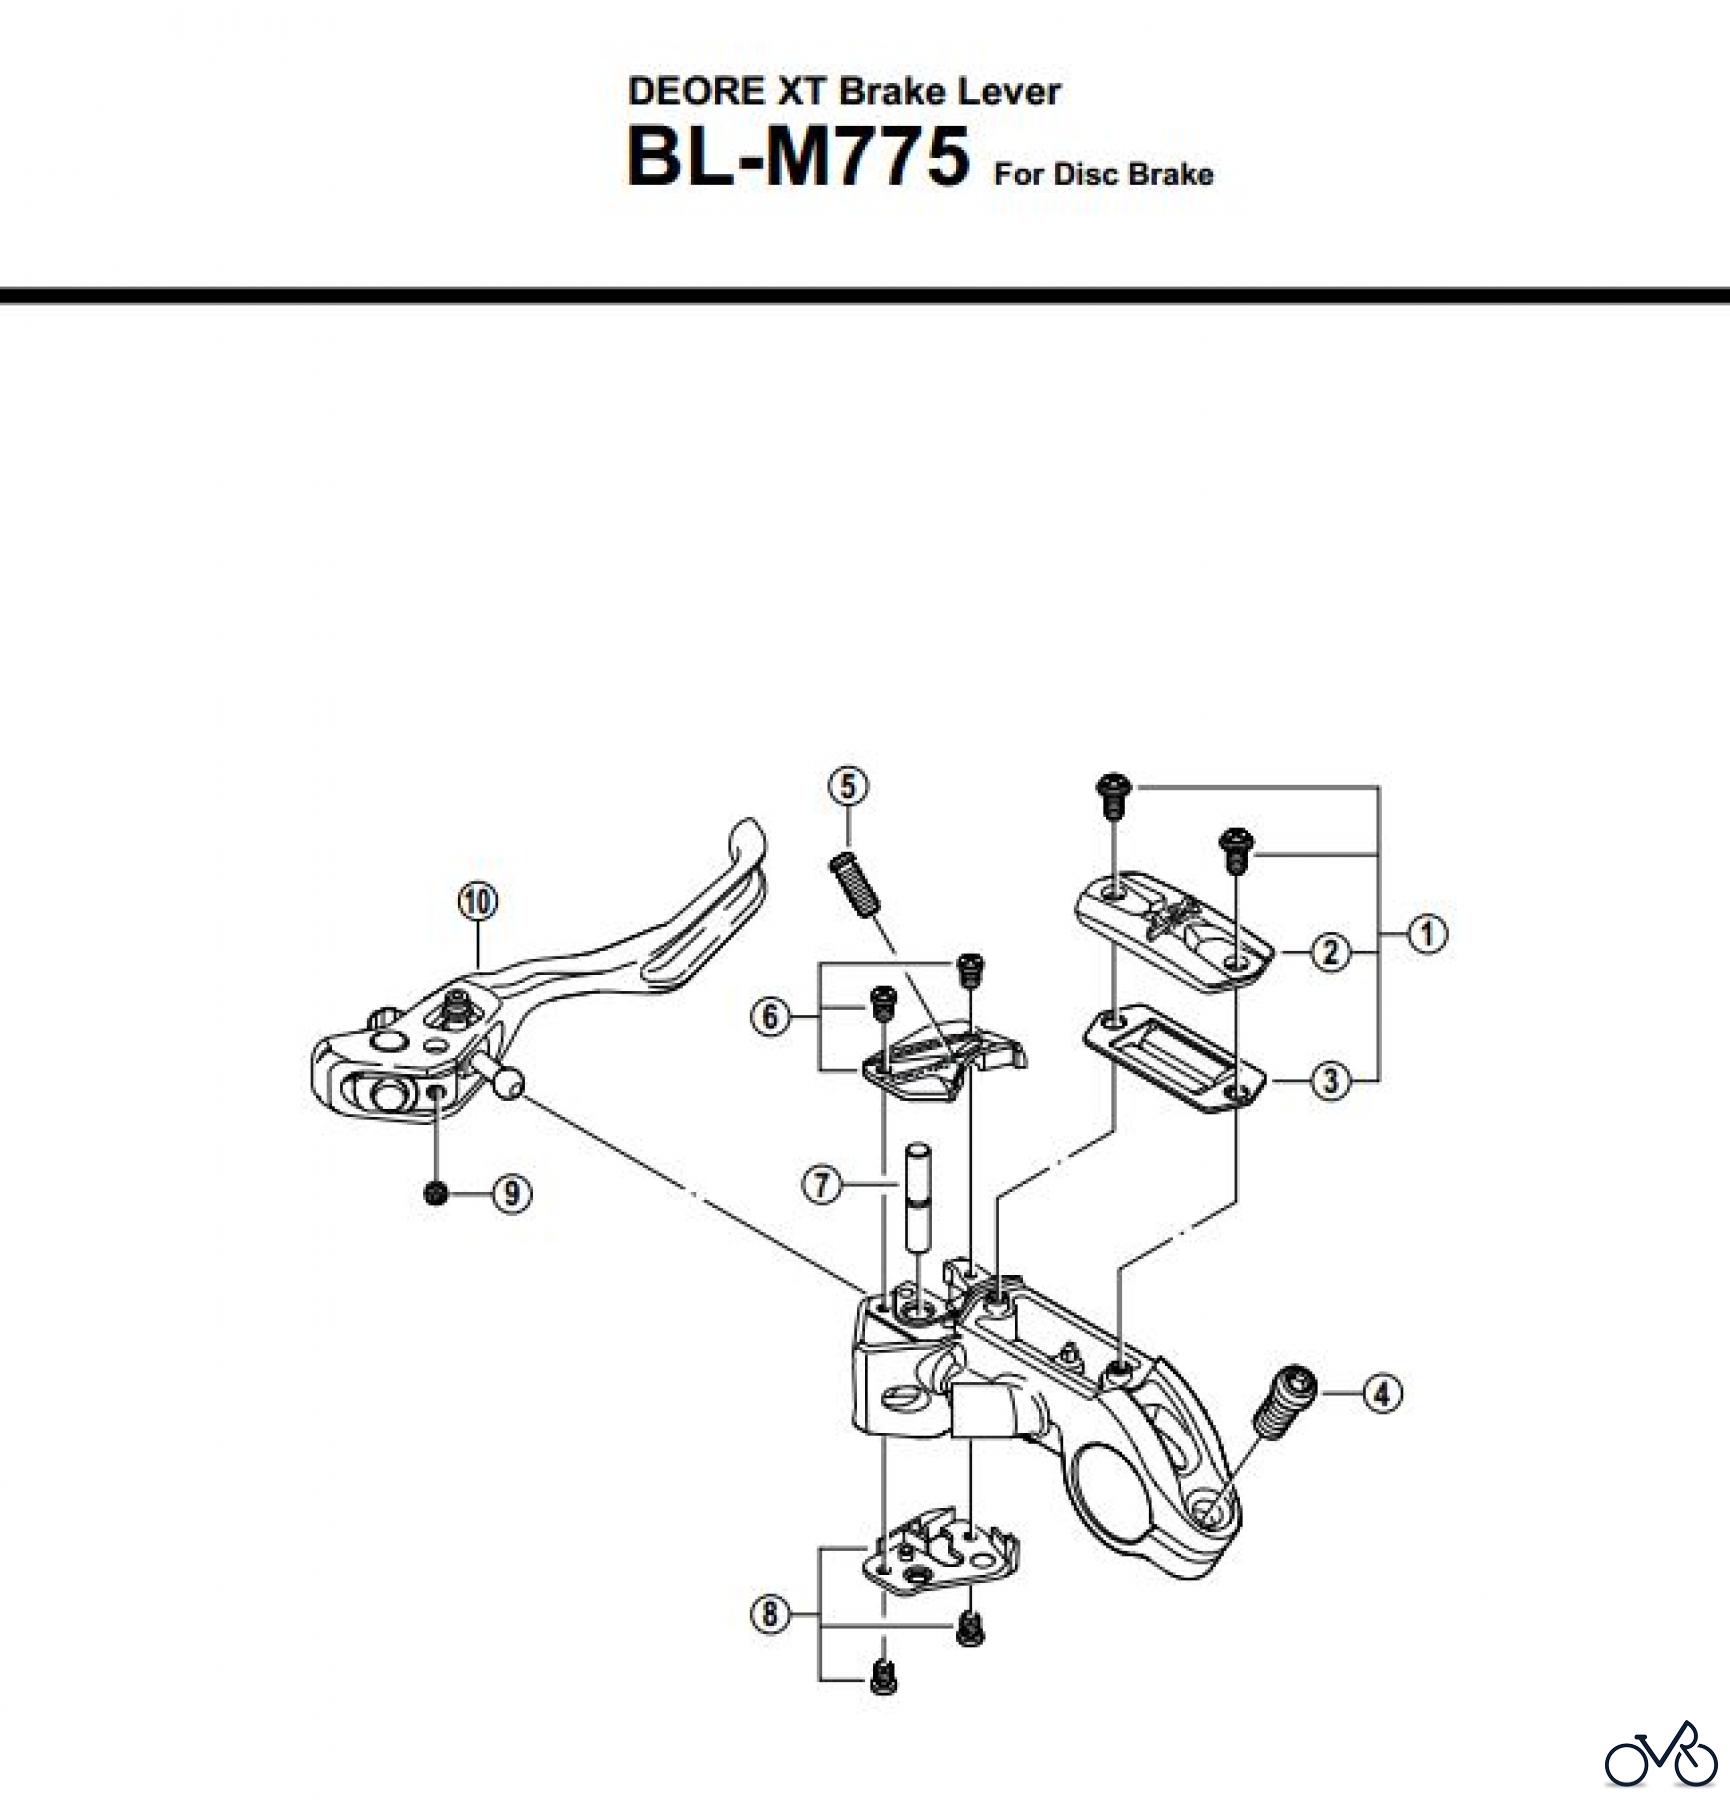  Shimano BL Brake Lever - Bremshebel BL-M775-XT